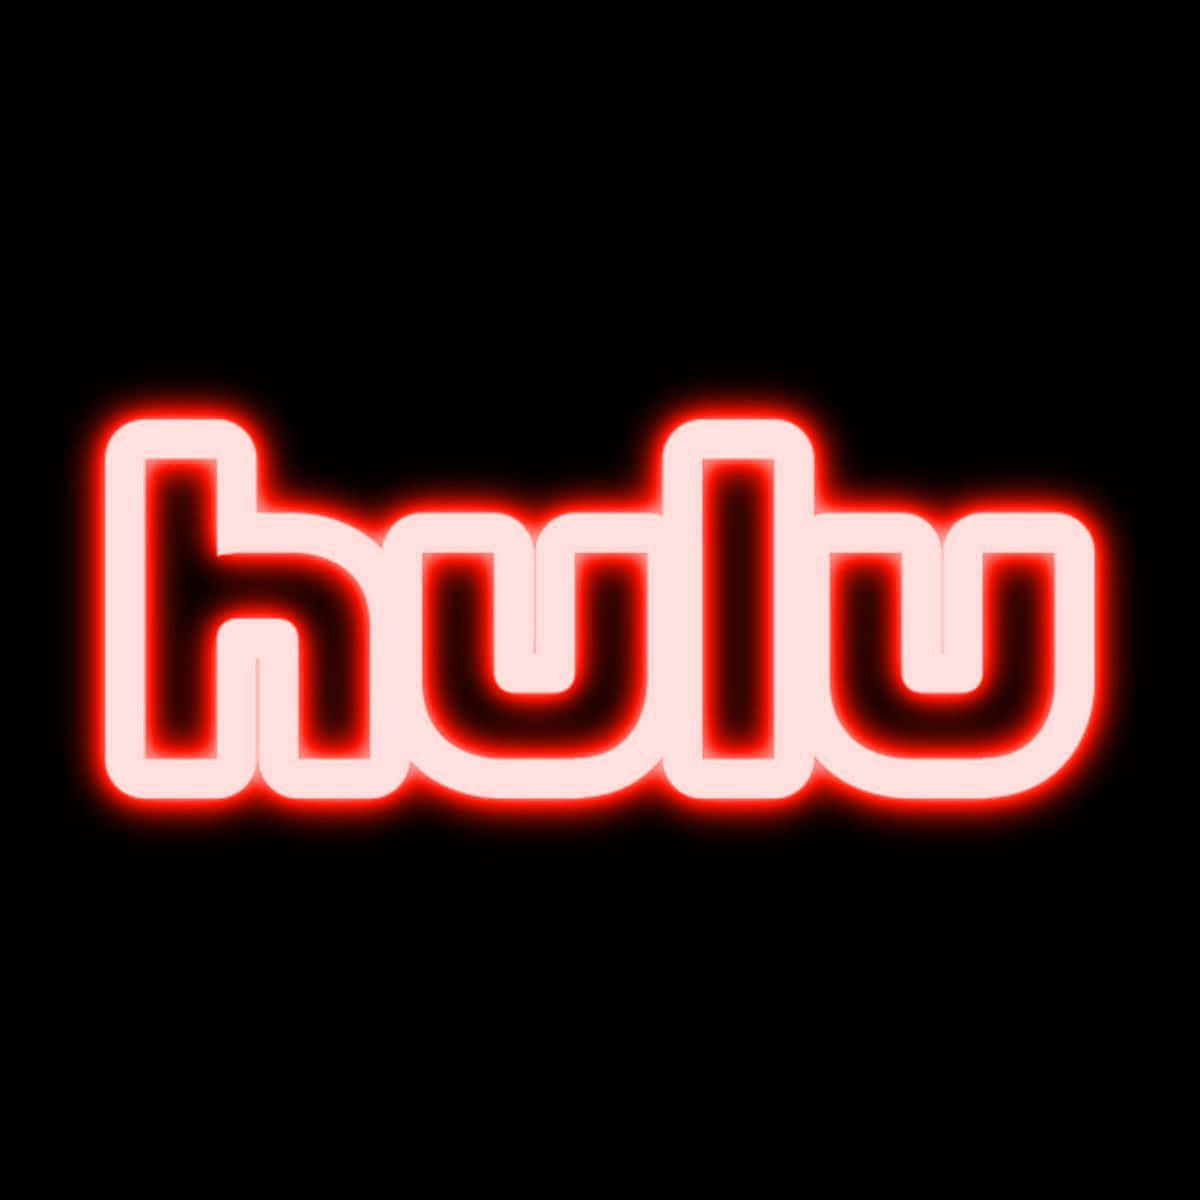 Nyddet Bedste Streamingindhold Med Hulu.